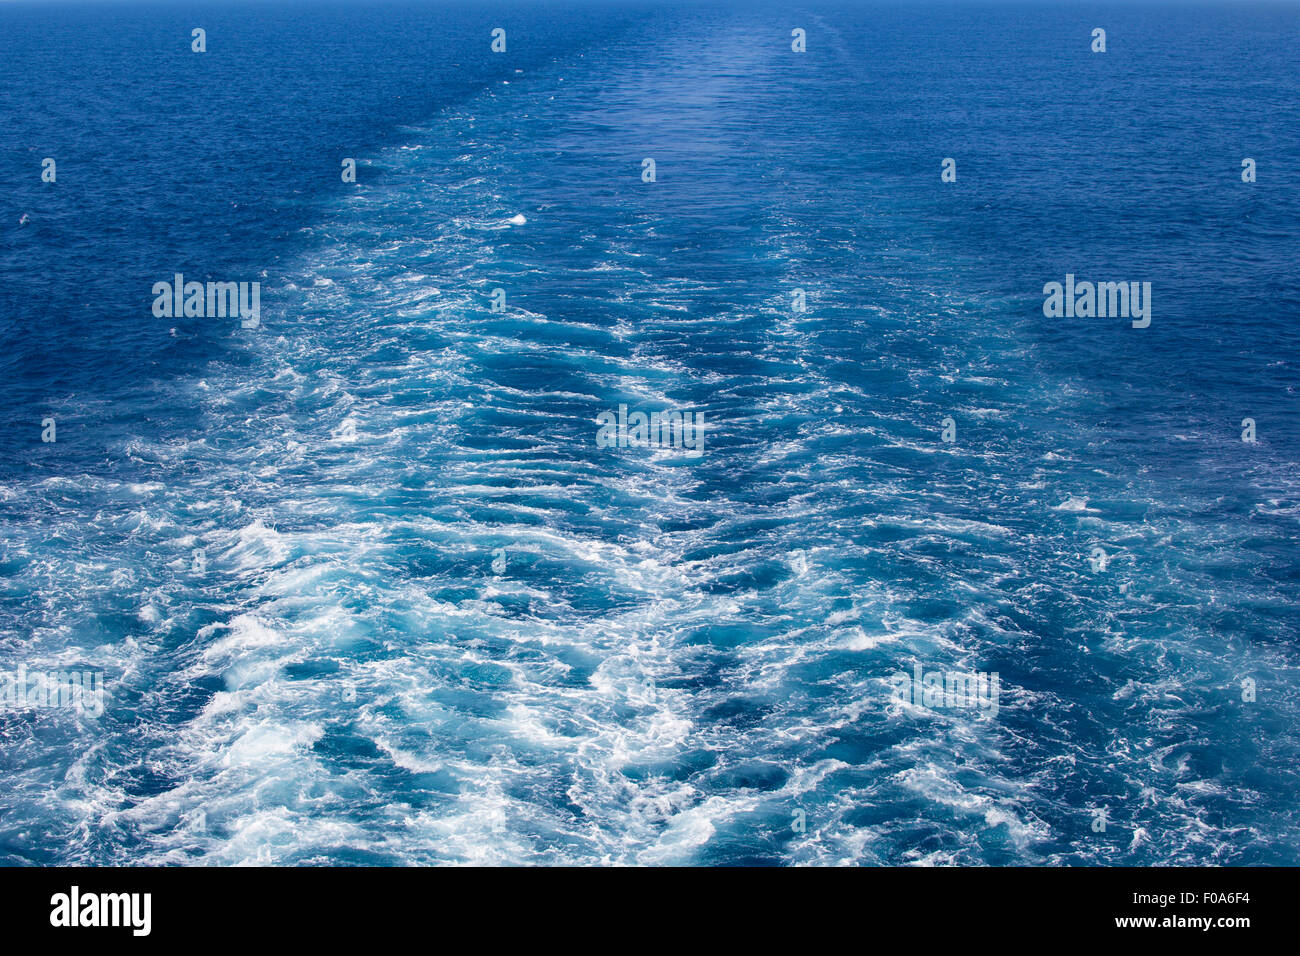 Bild von einem Wake im Meer, während der Bewegung durch große Schiffsschrauben verursacht. Stockfoto